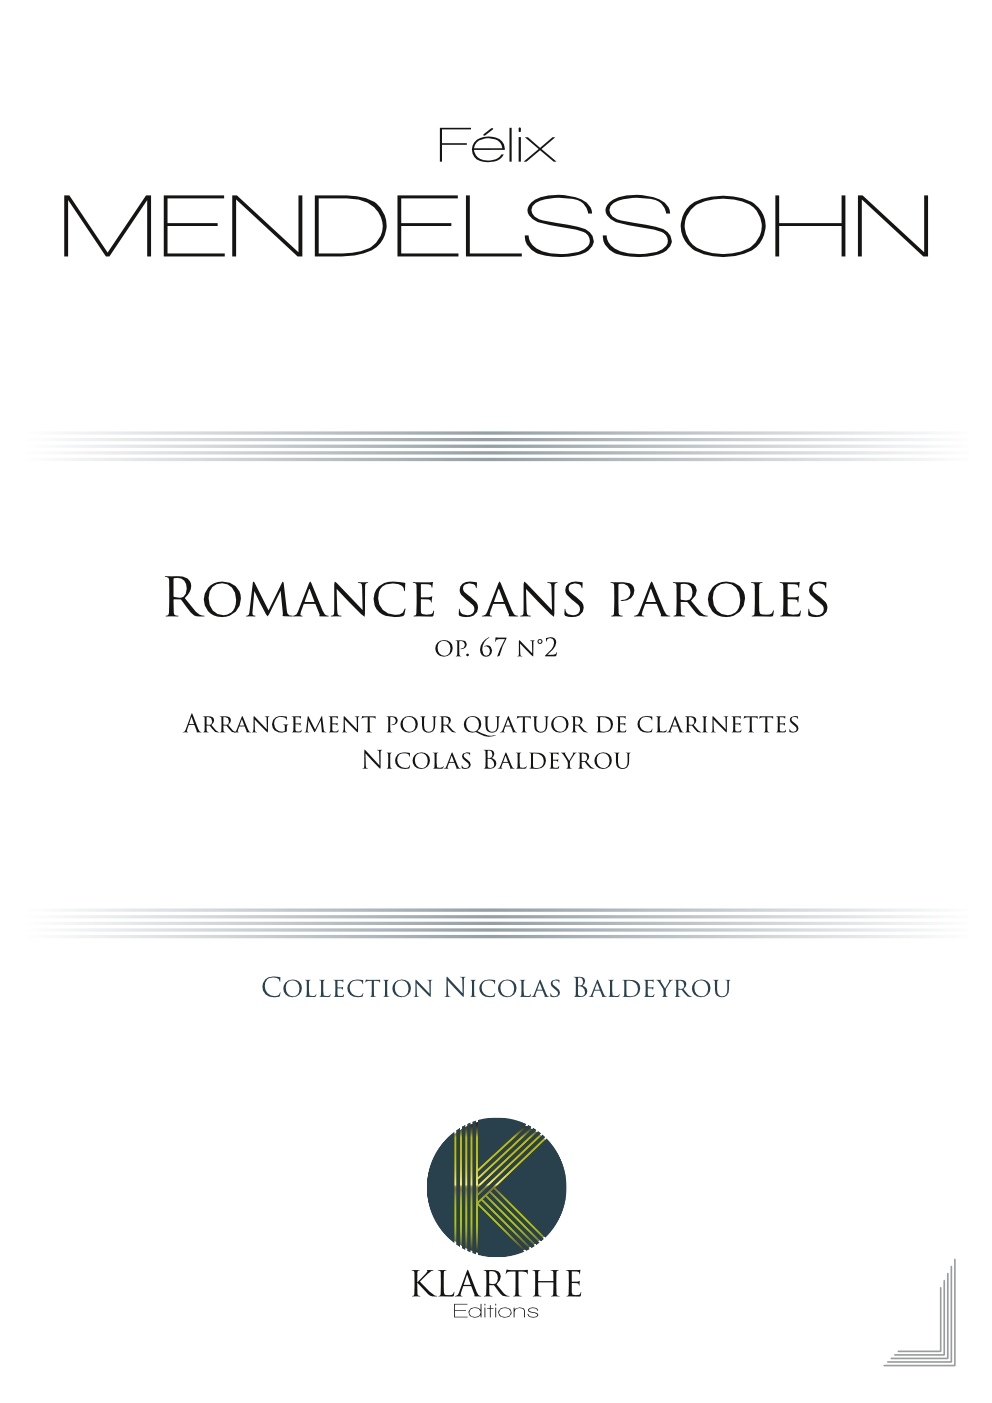 Romance sans paroles opus 67, n�4 (MENDELSSOHN-BARTHOLDY FELIX)